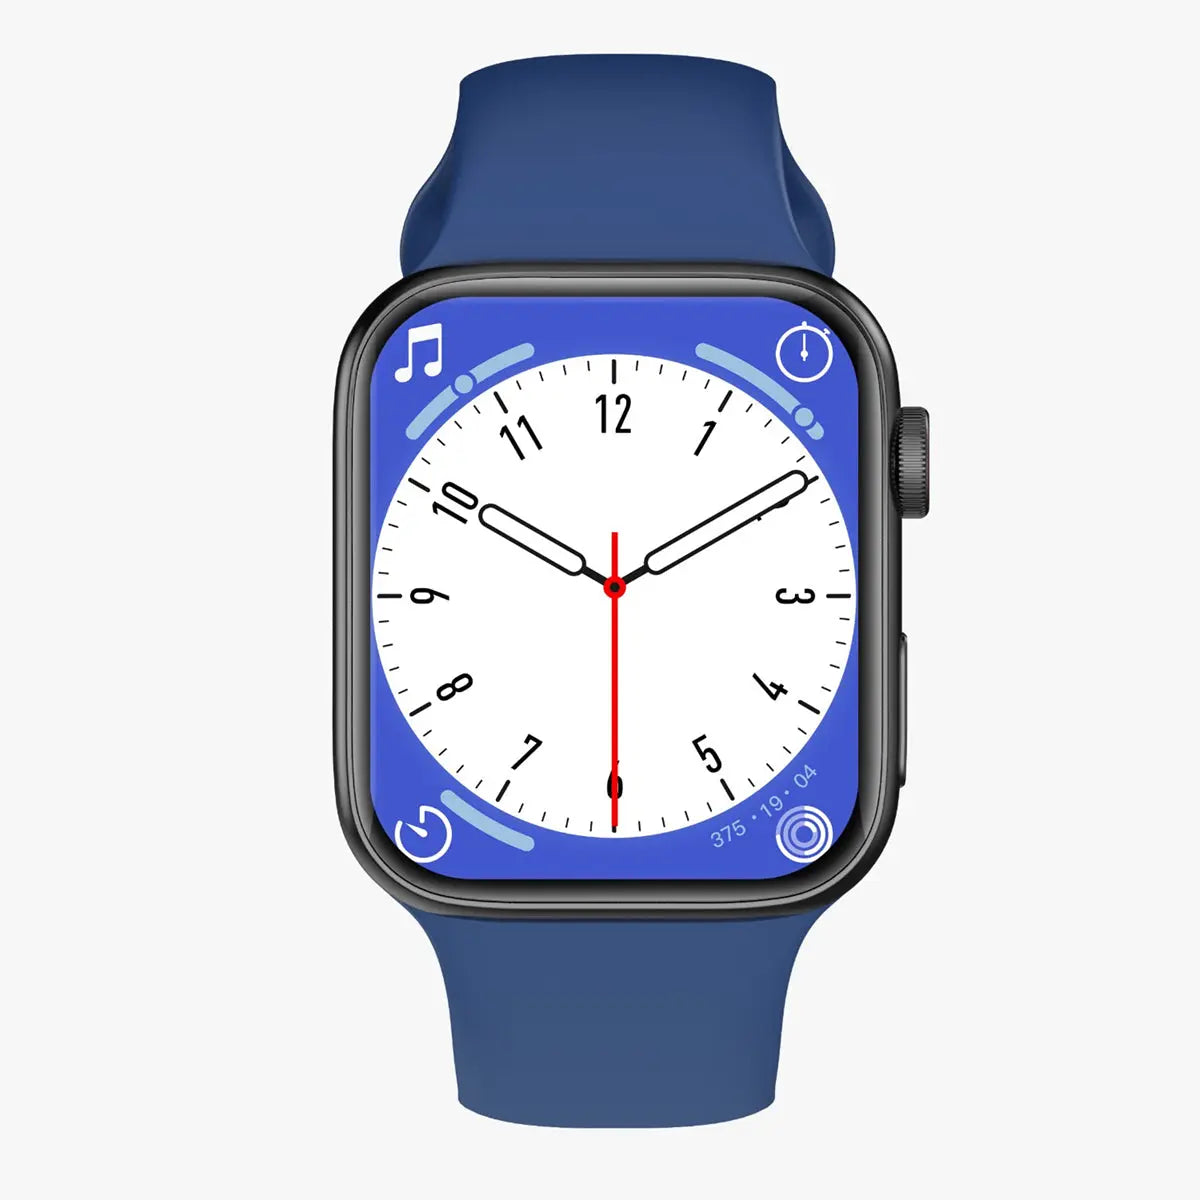 Smartwatch Reloj T900 Suit Fralugio 2 Correas Notificaciones